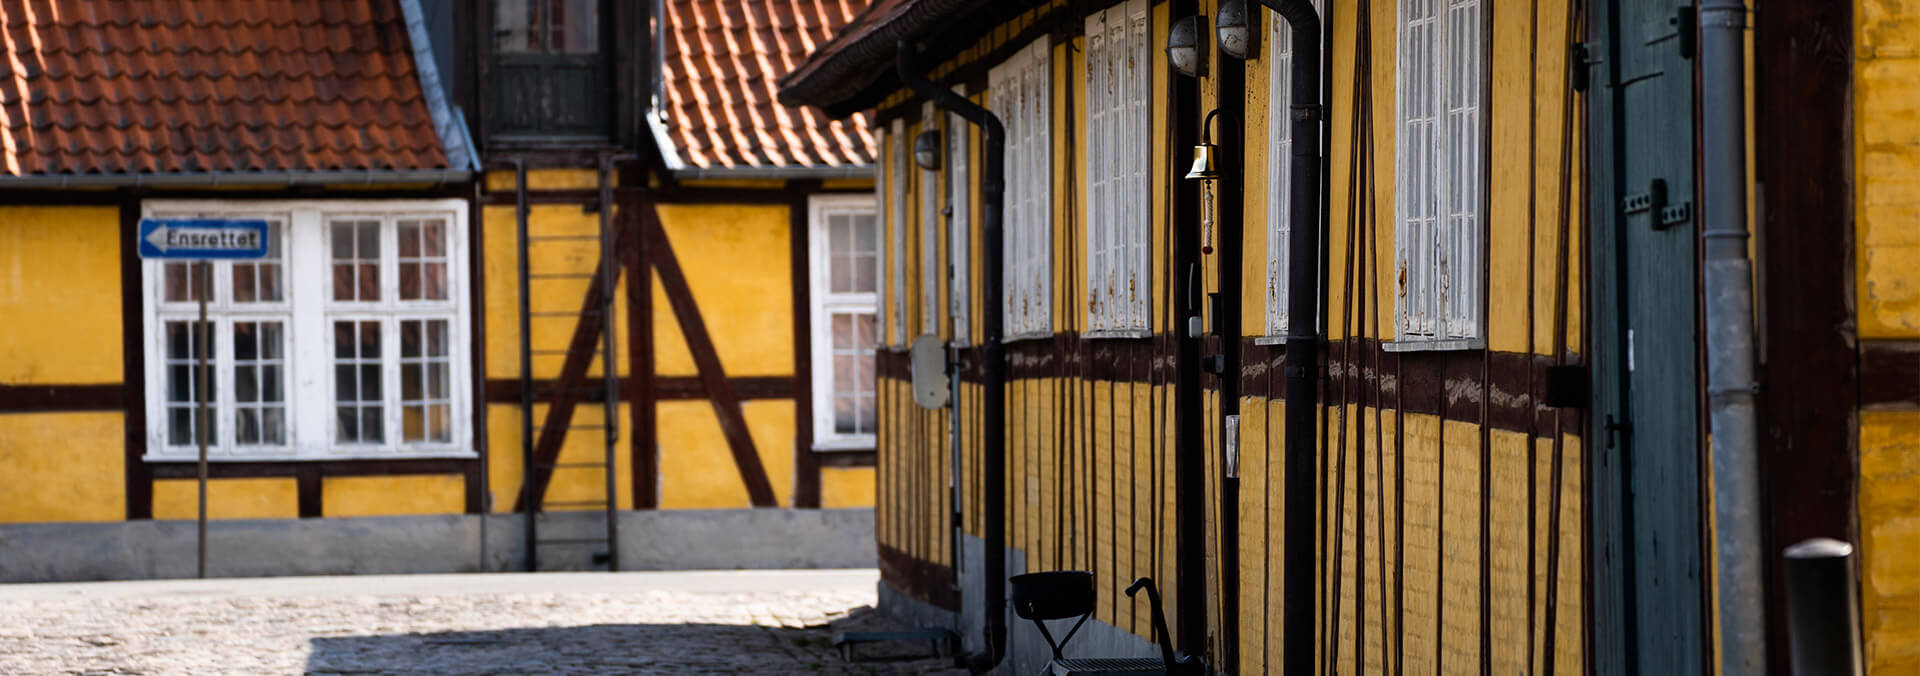 Takkelagehuset (gul bindingsværkshus) på Nyholm